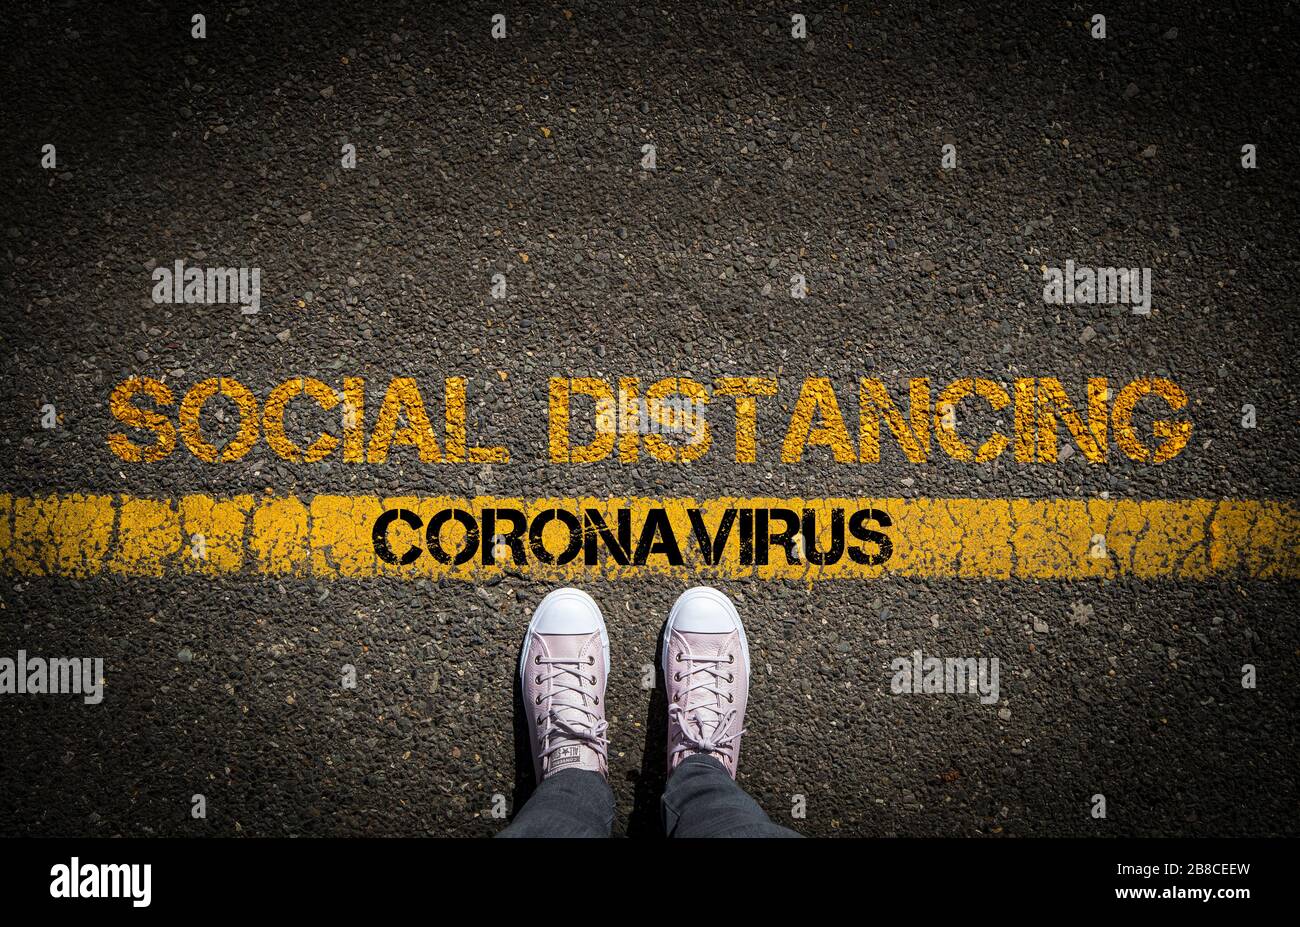 Distanciation sociale pour réduire la propagation du Coronavirus, image conceptuelle. Banque D'Images